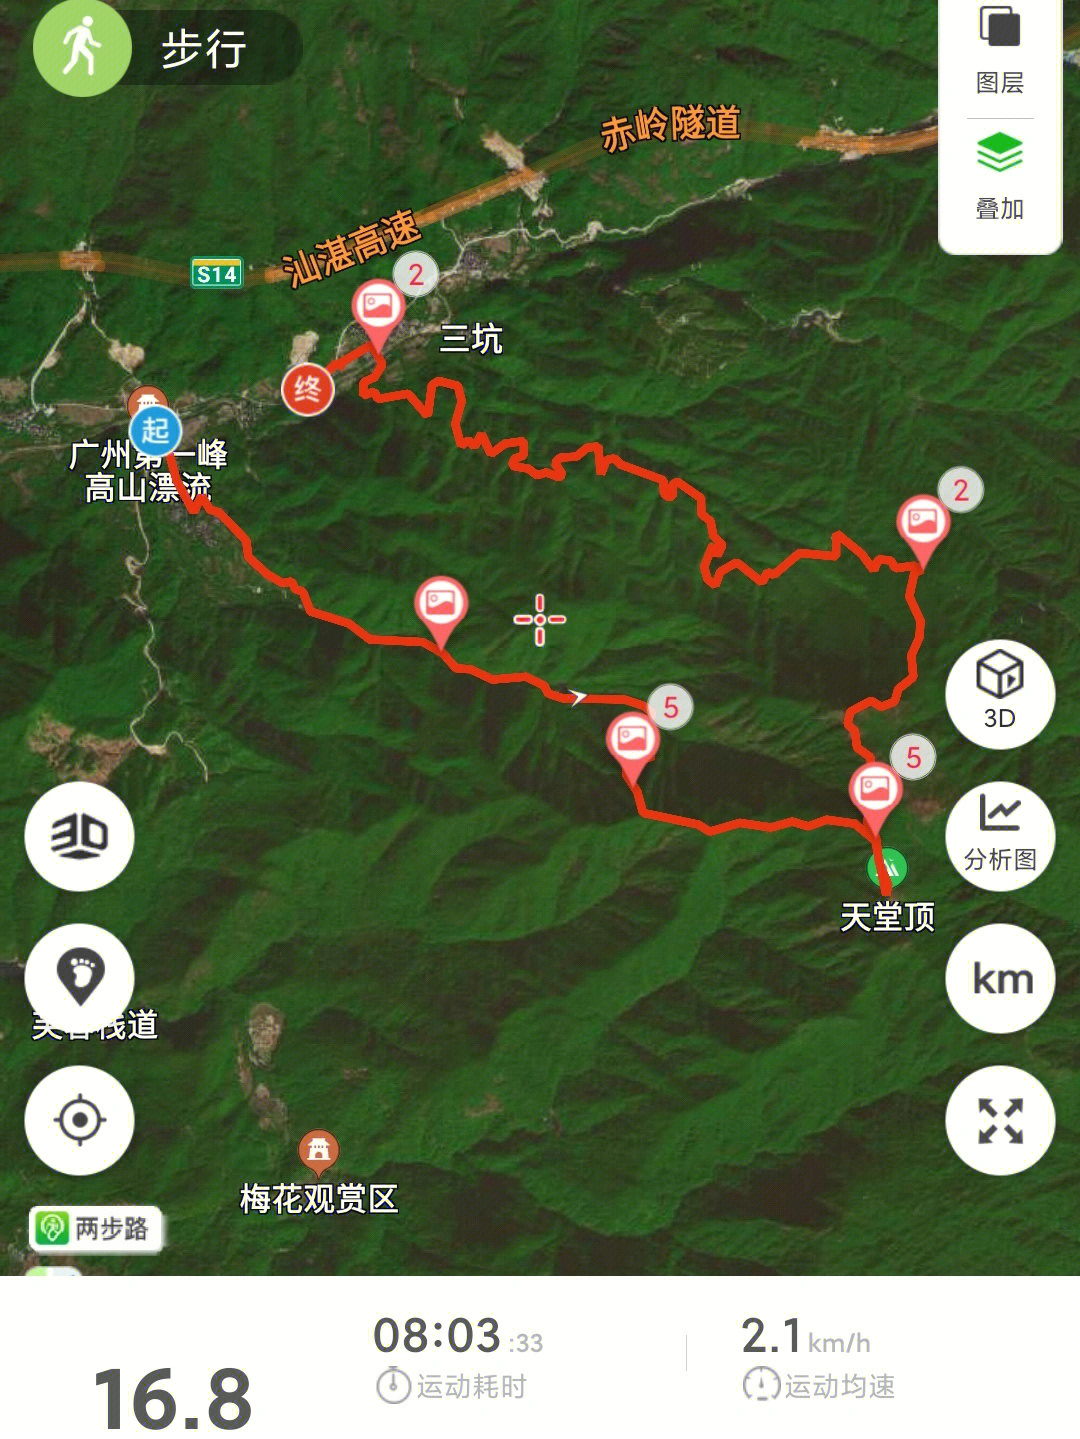 周末打卡了广州最高峰天堂顶徒步路线